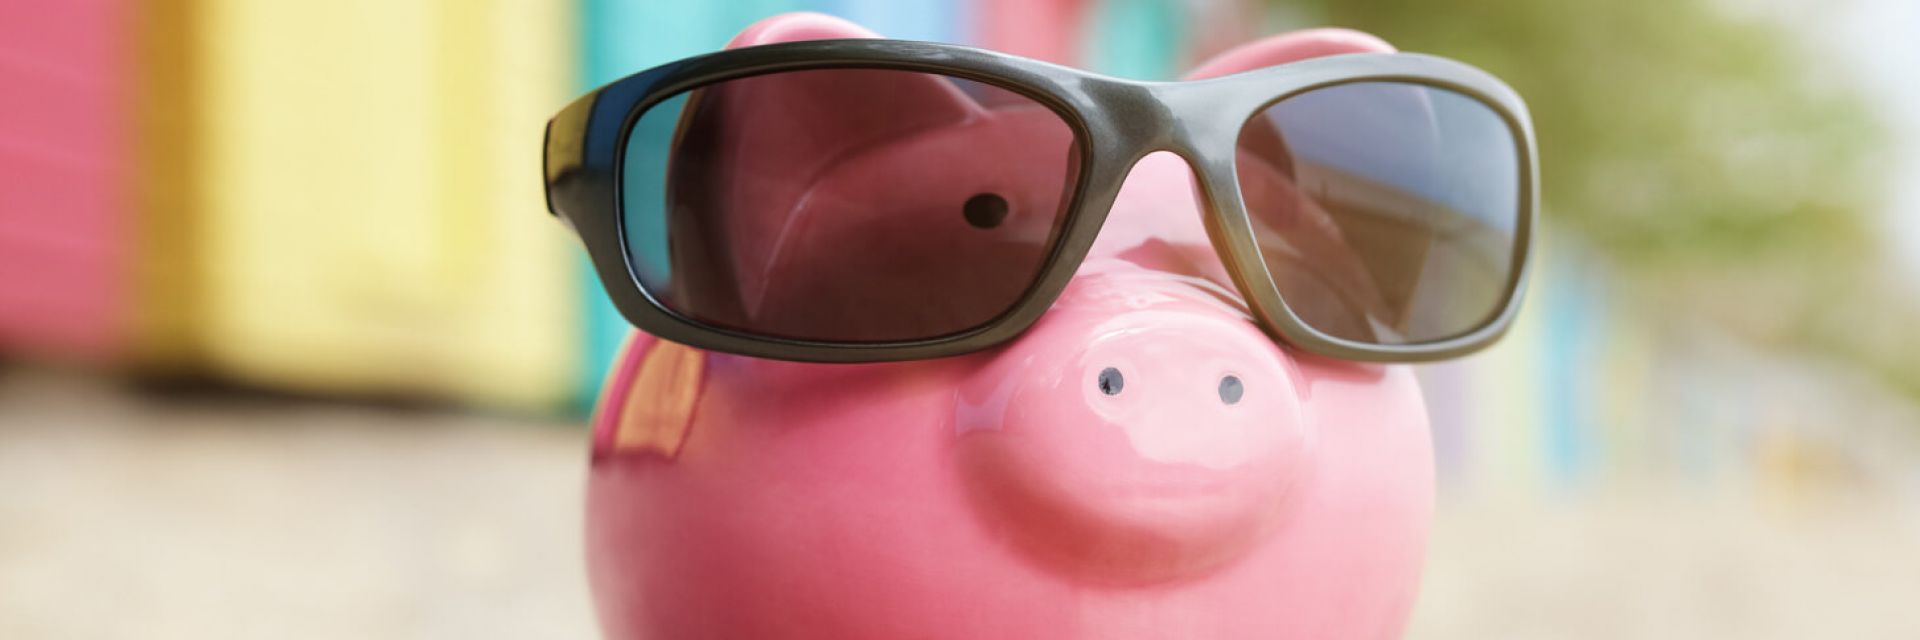 Confira cinco dicas infalíveis para aprender como juntar dinheiro para viajar!